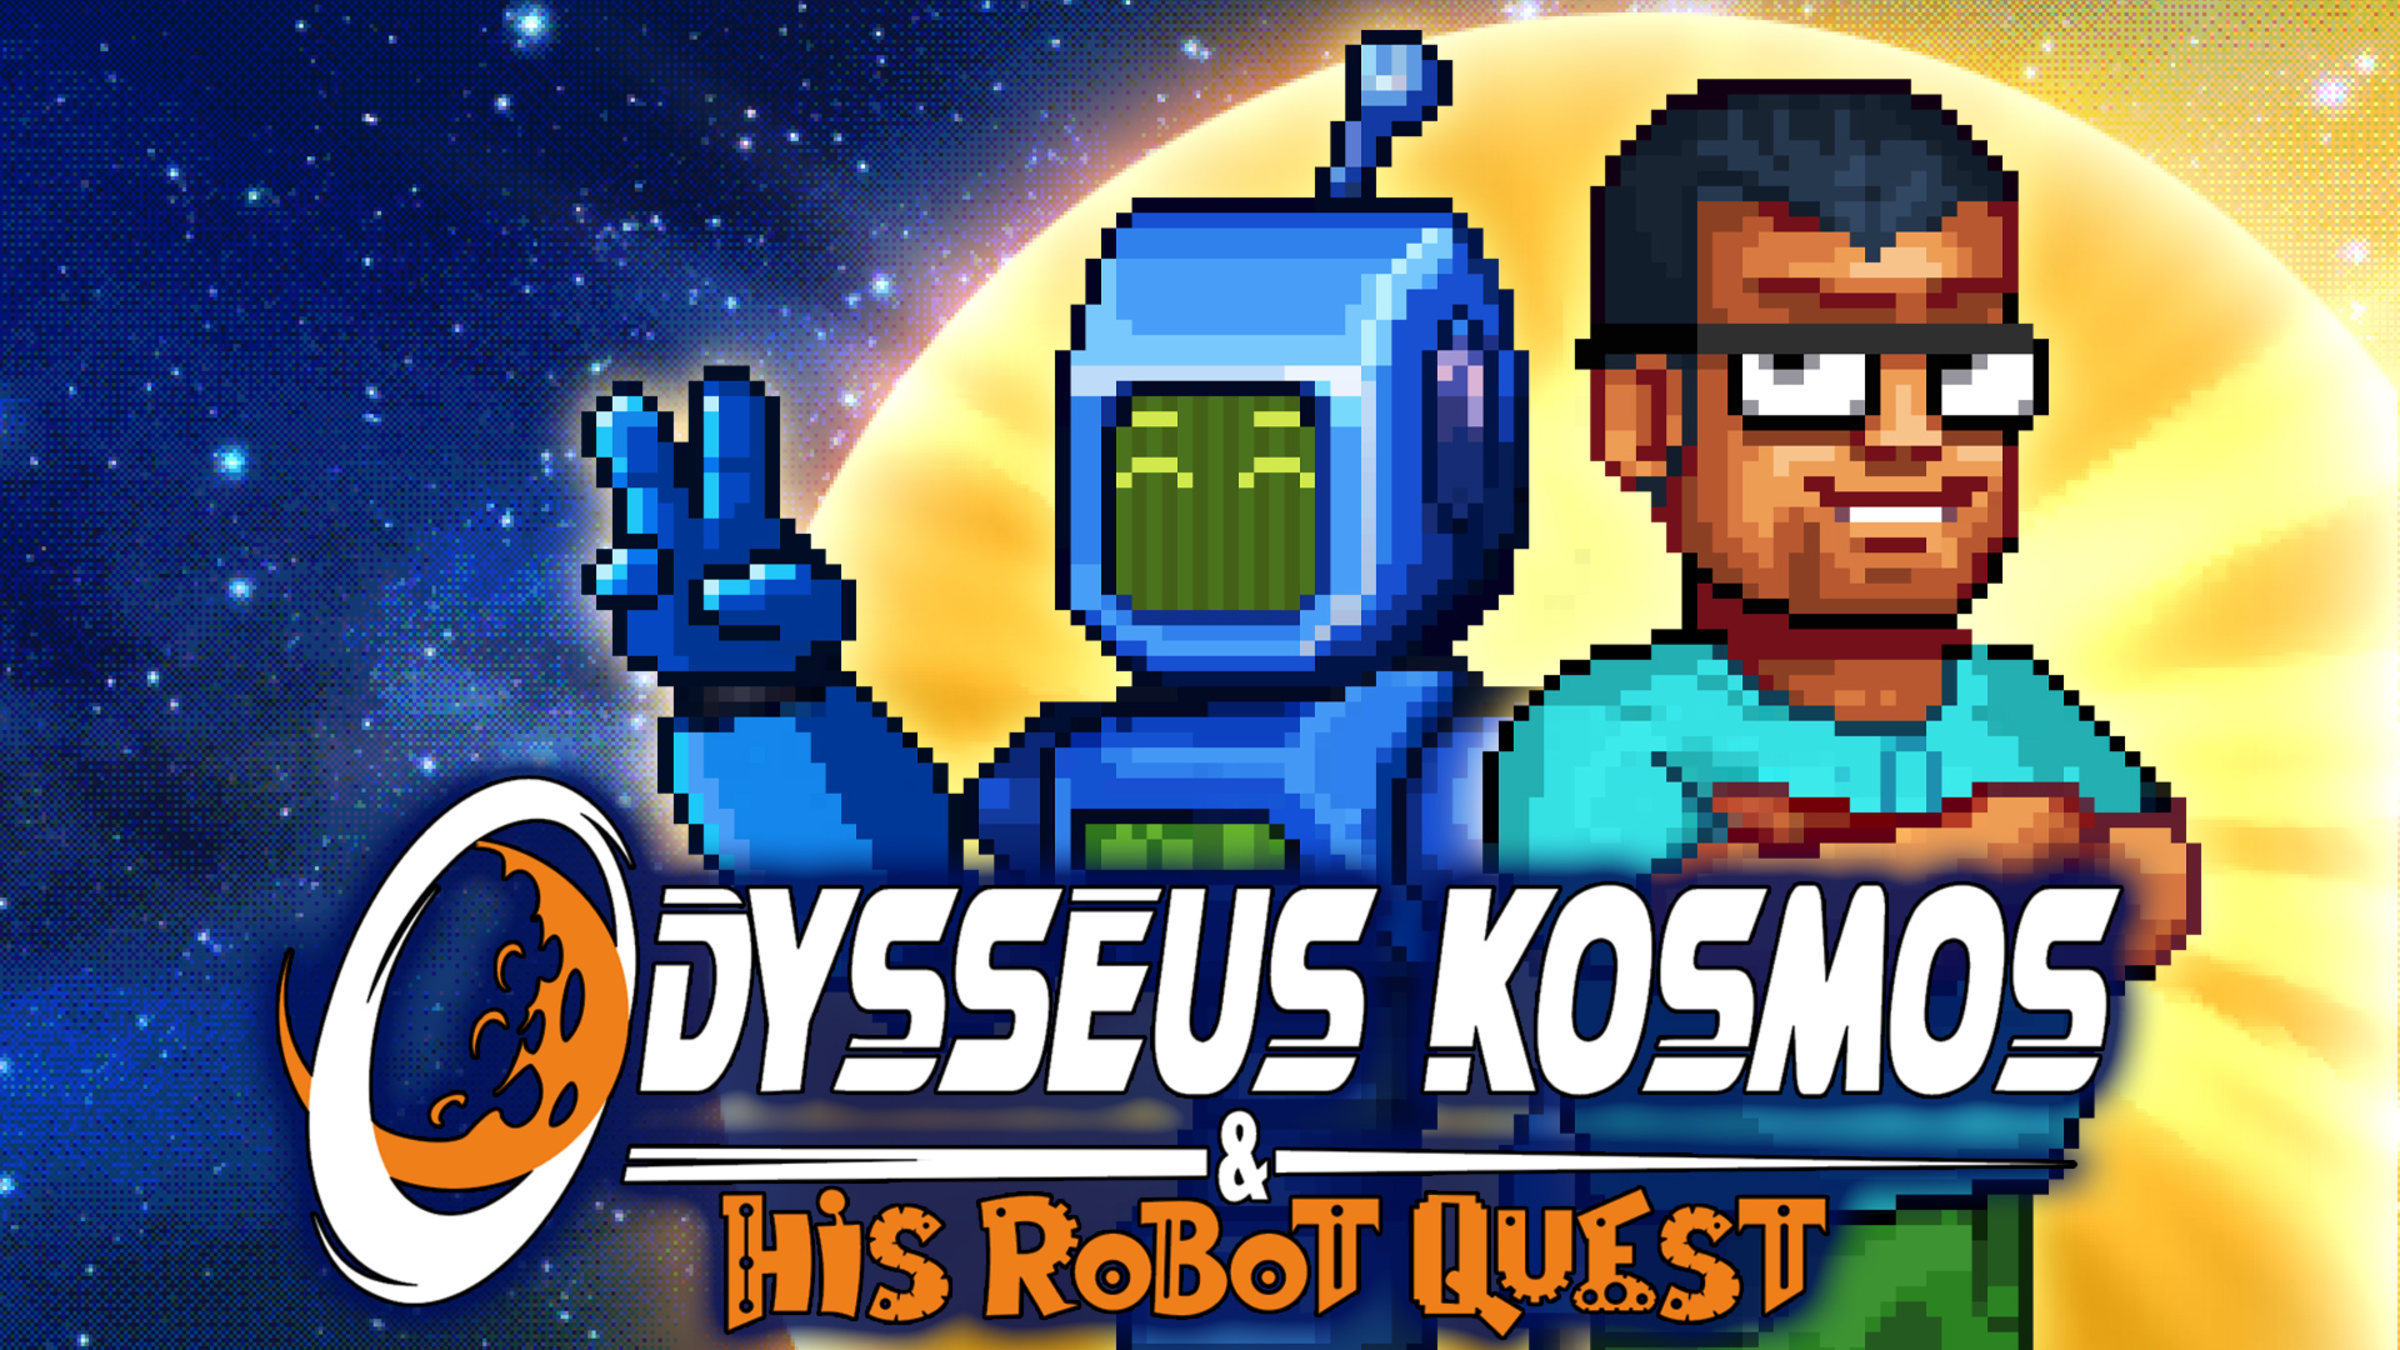 Odysseus Kosmos his Robot for Nintendo Switch - Nintendo Official Site